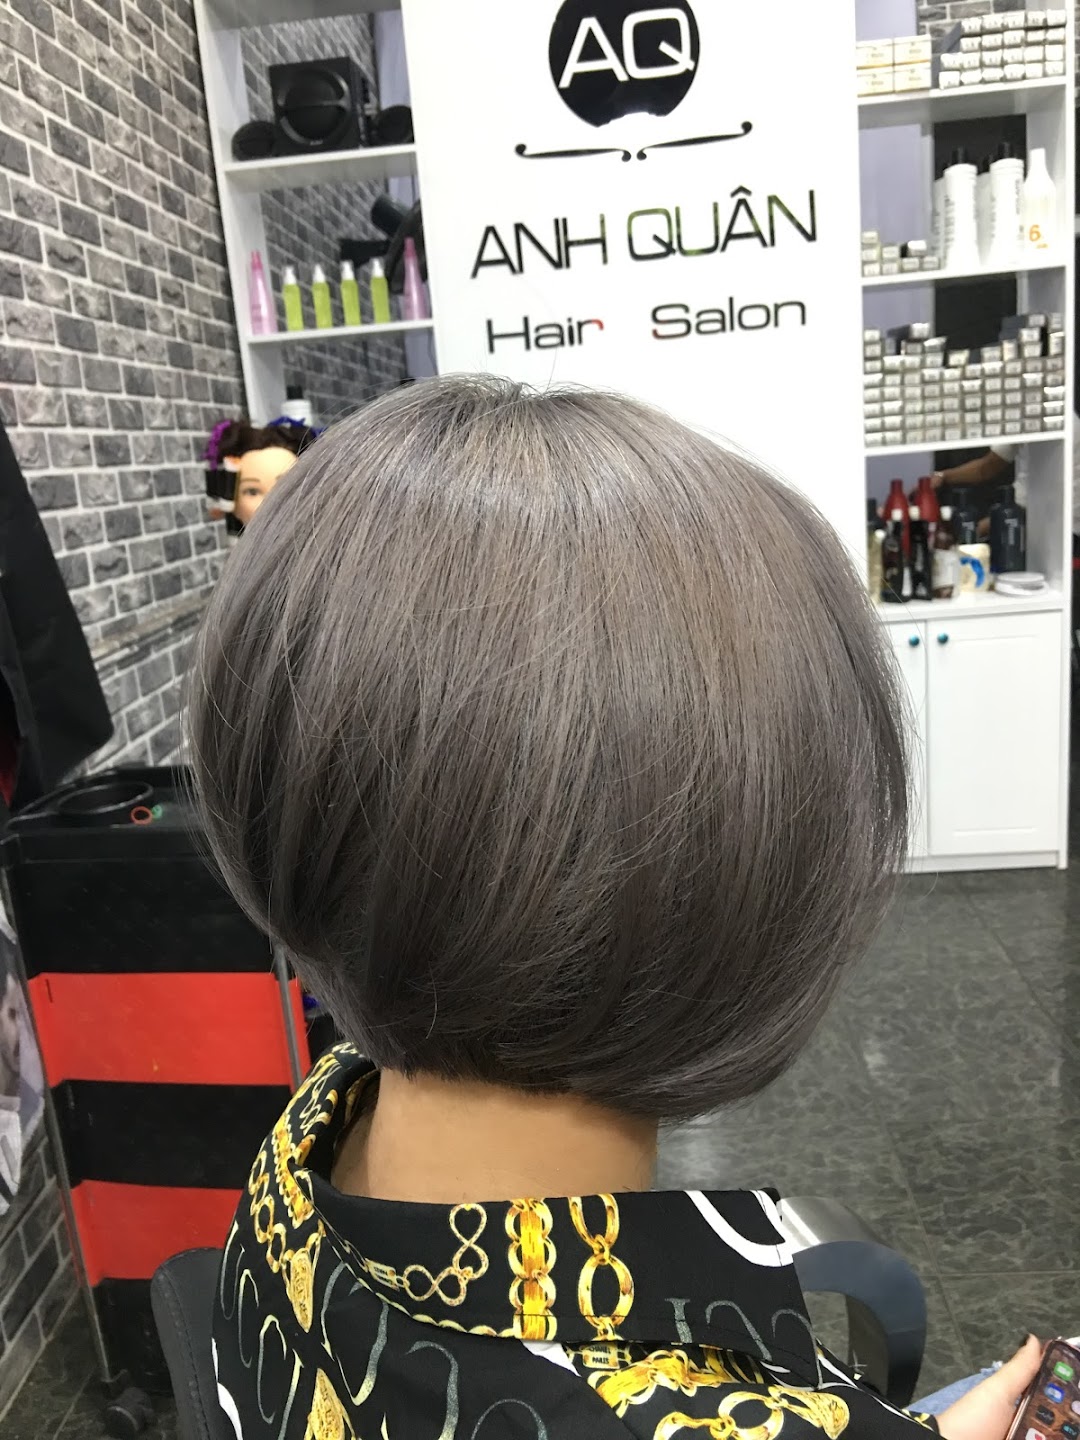 Hair Salon Anh Quân